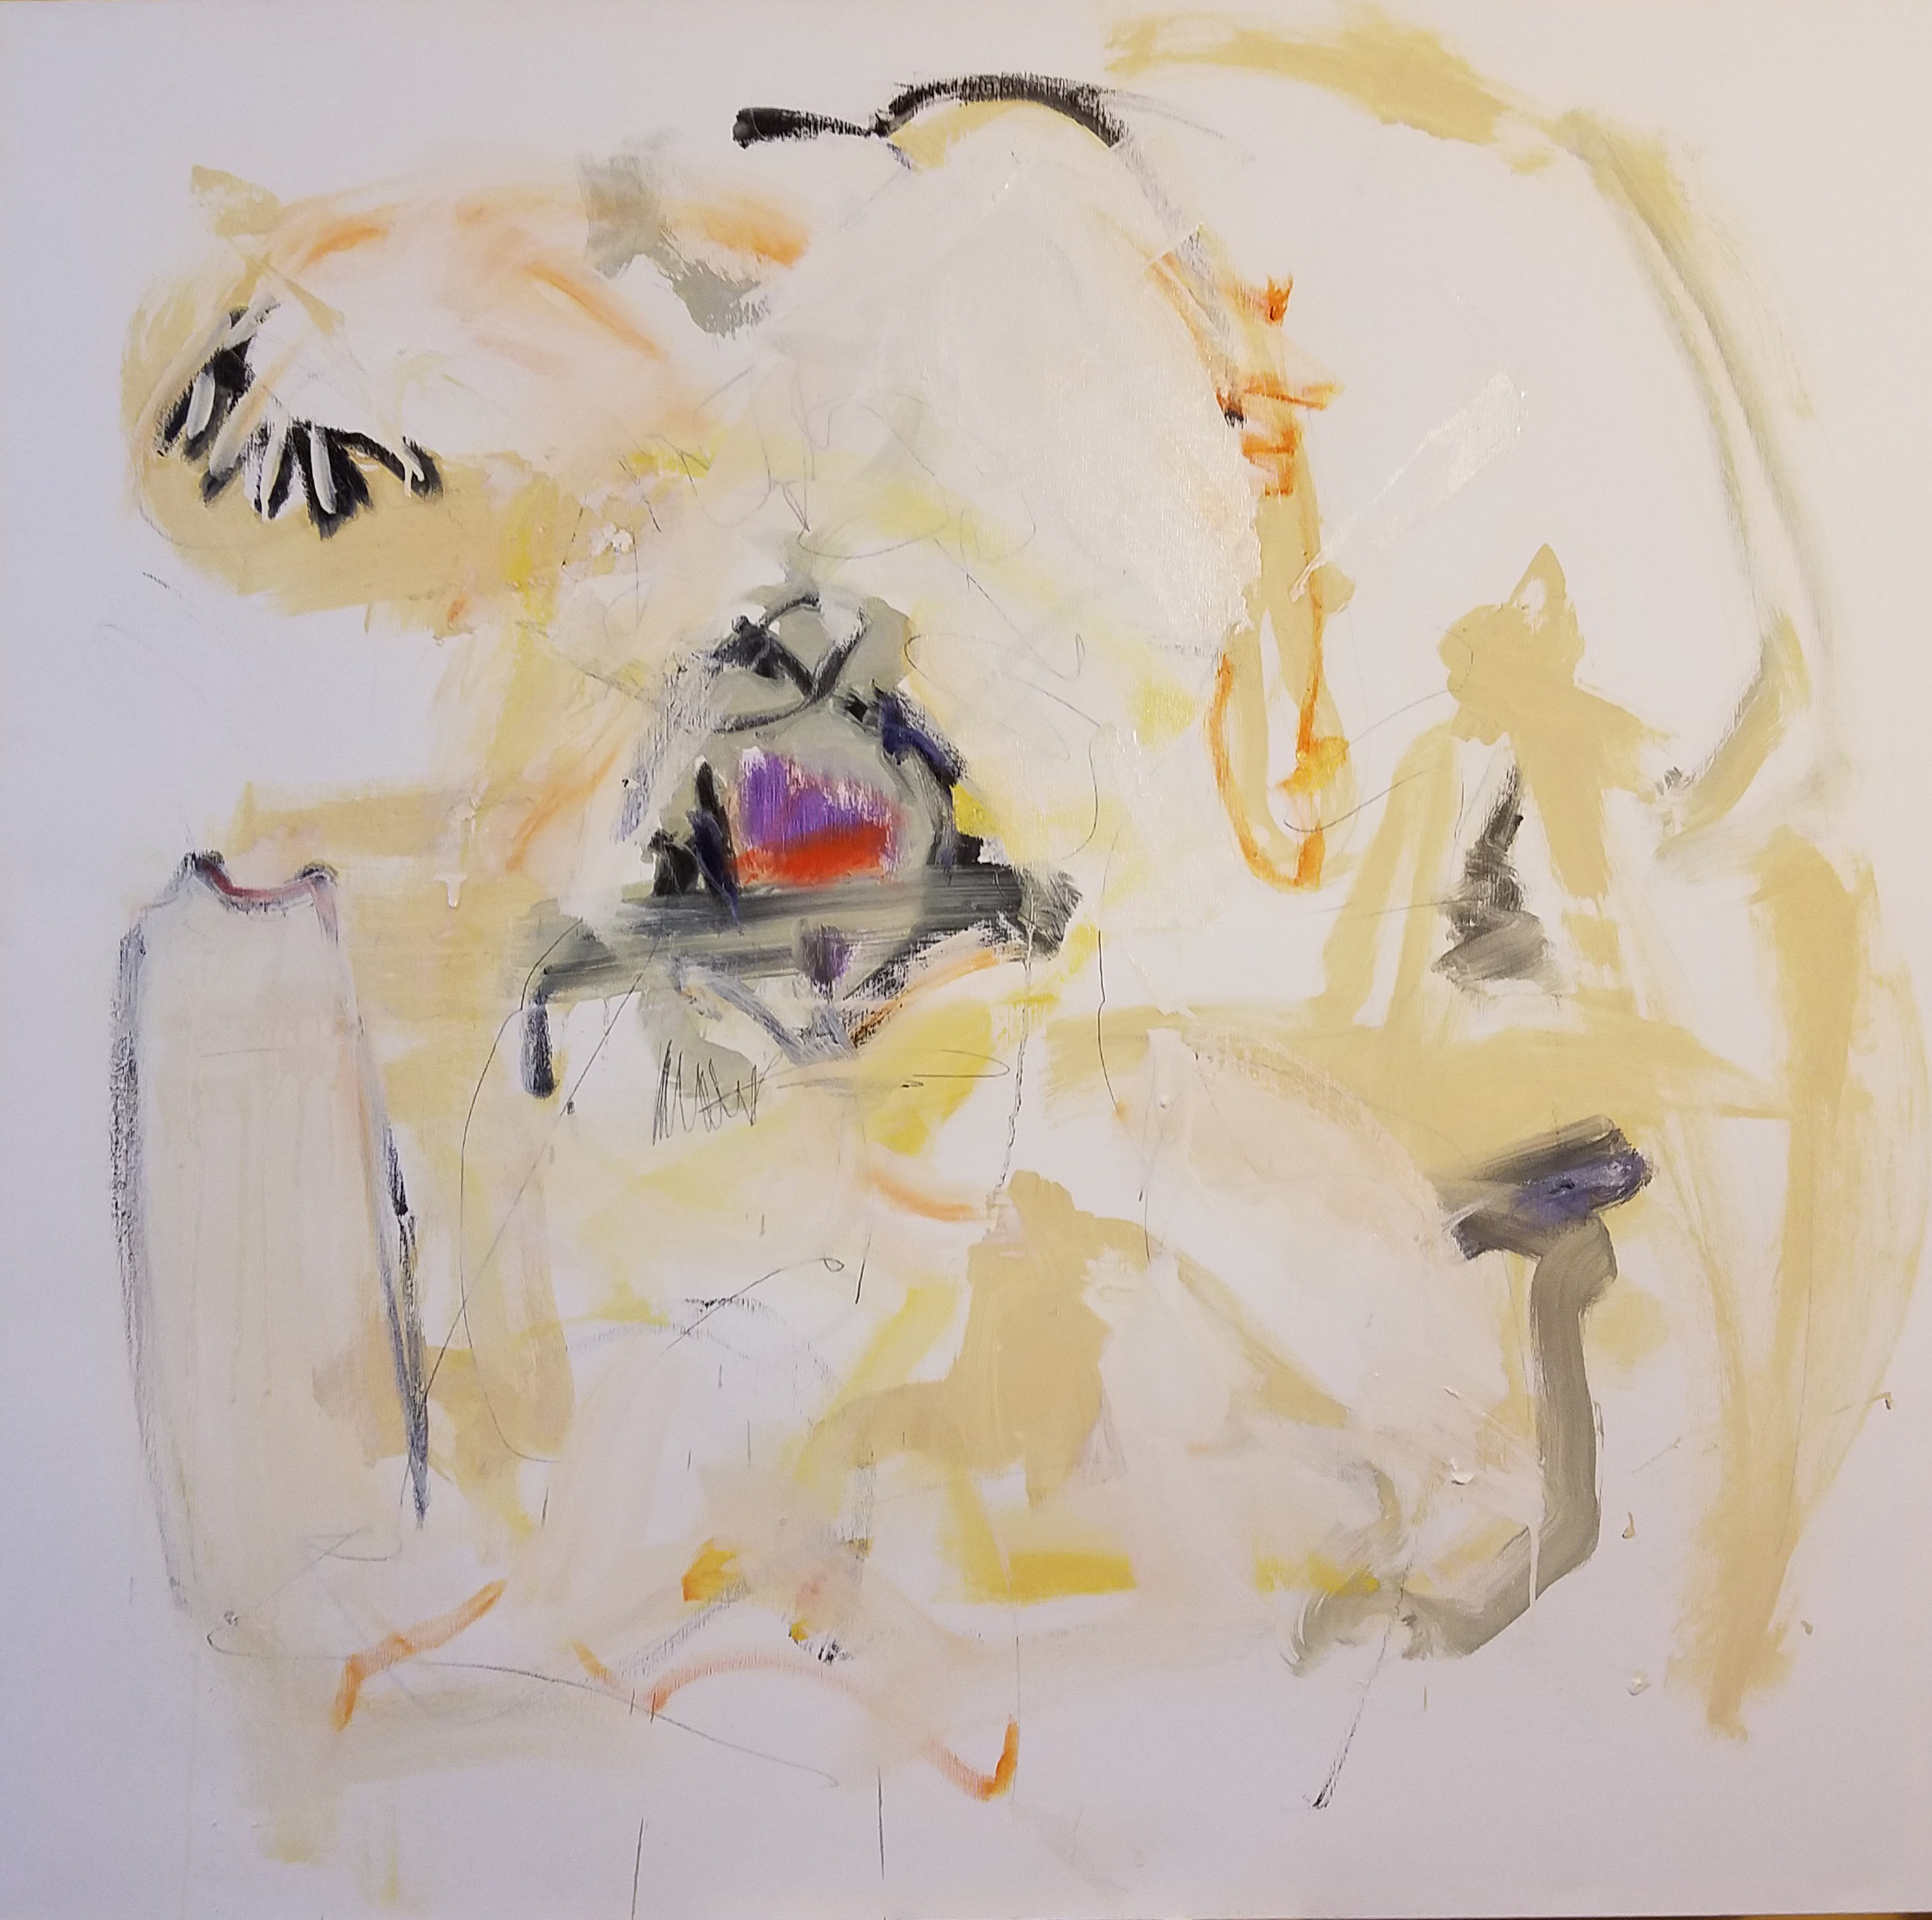 Sacré-Cœur, Oil on Canvas, 2017, Copyright Paul XO Pinkman